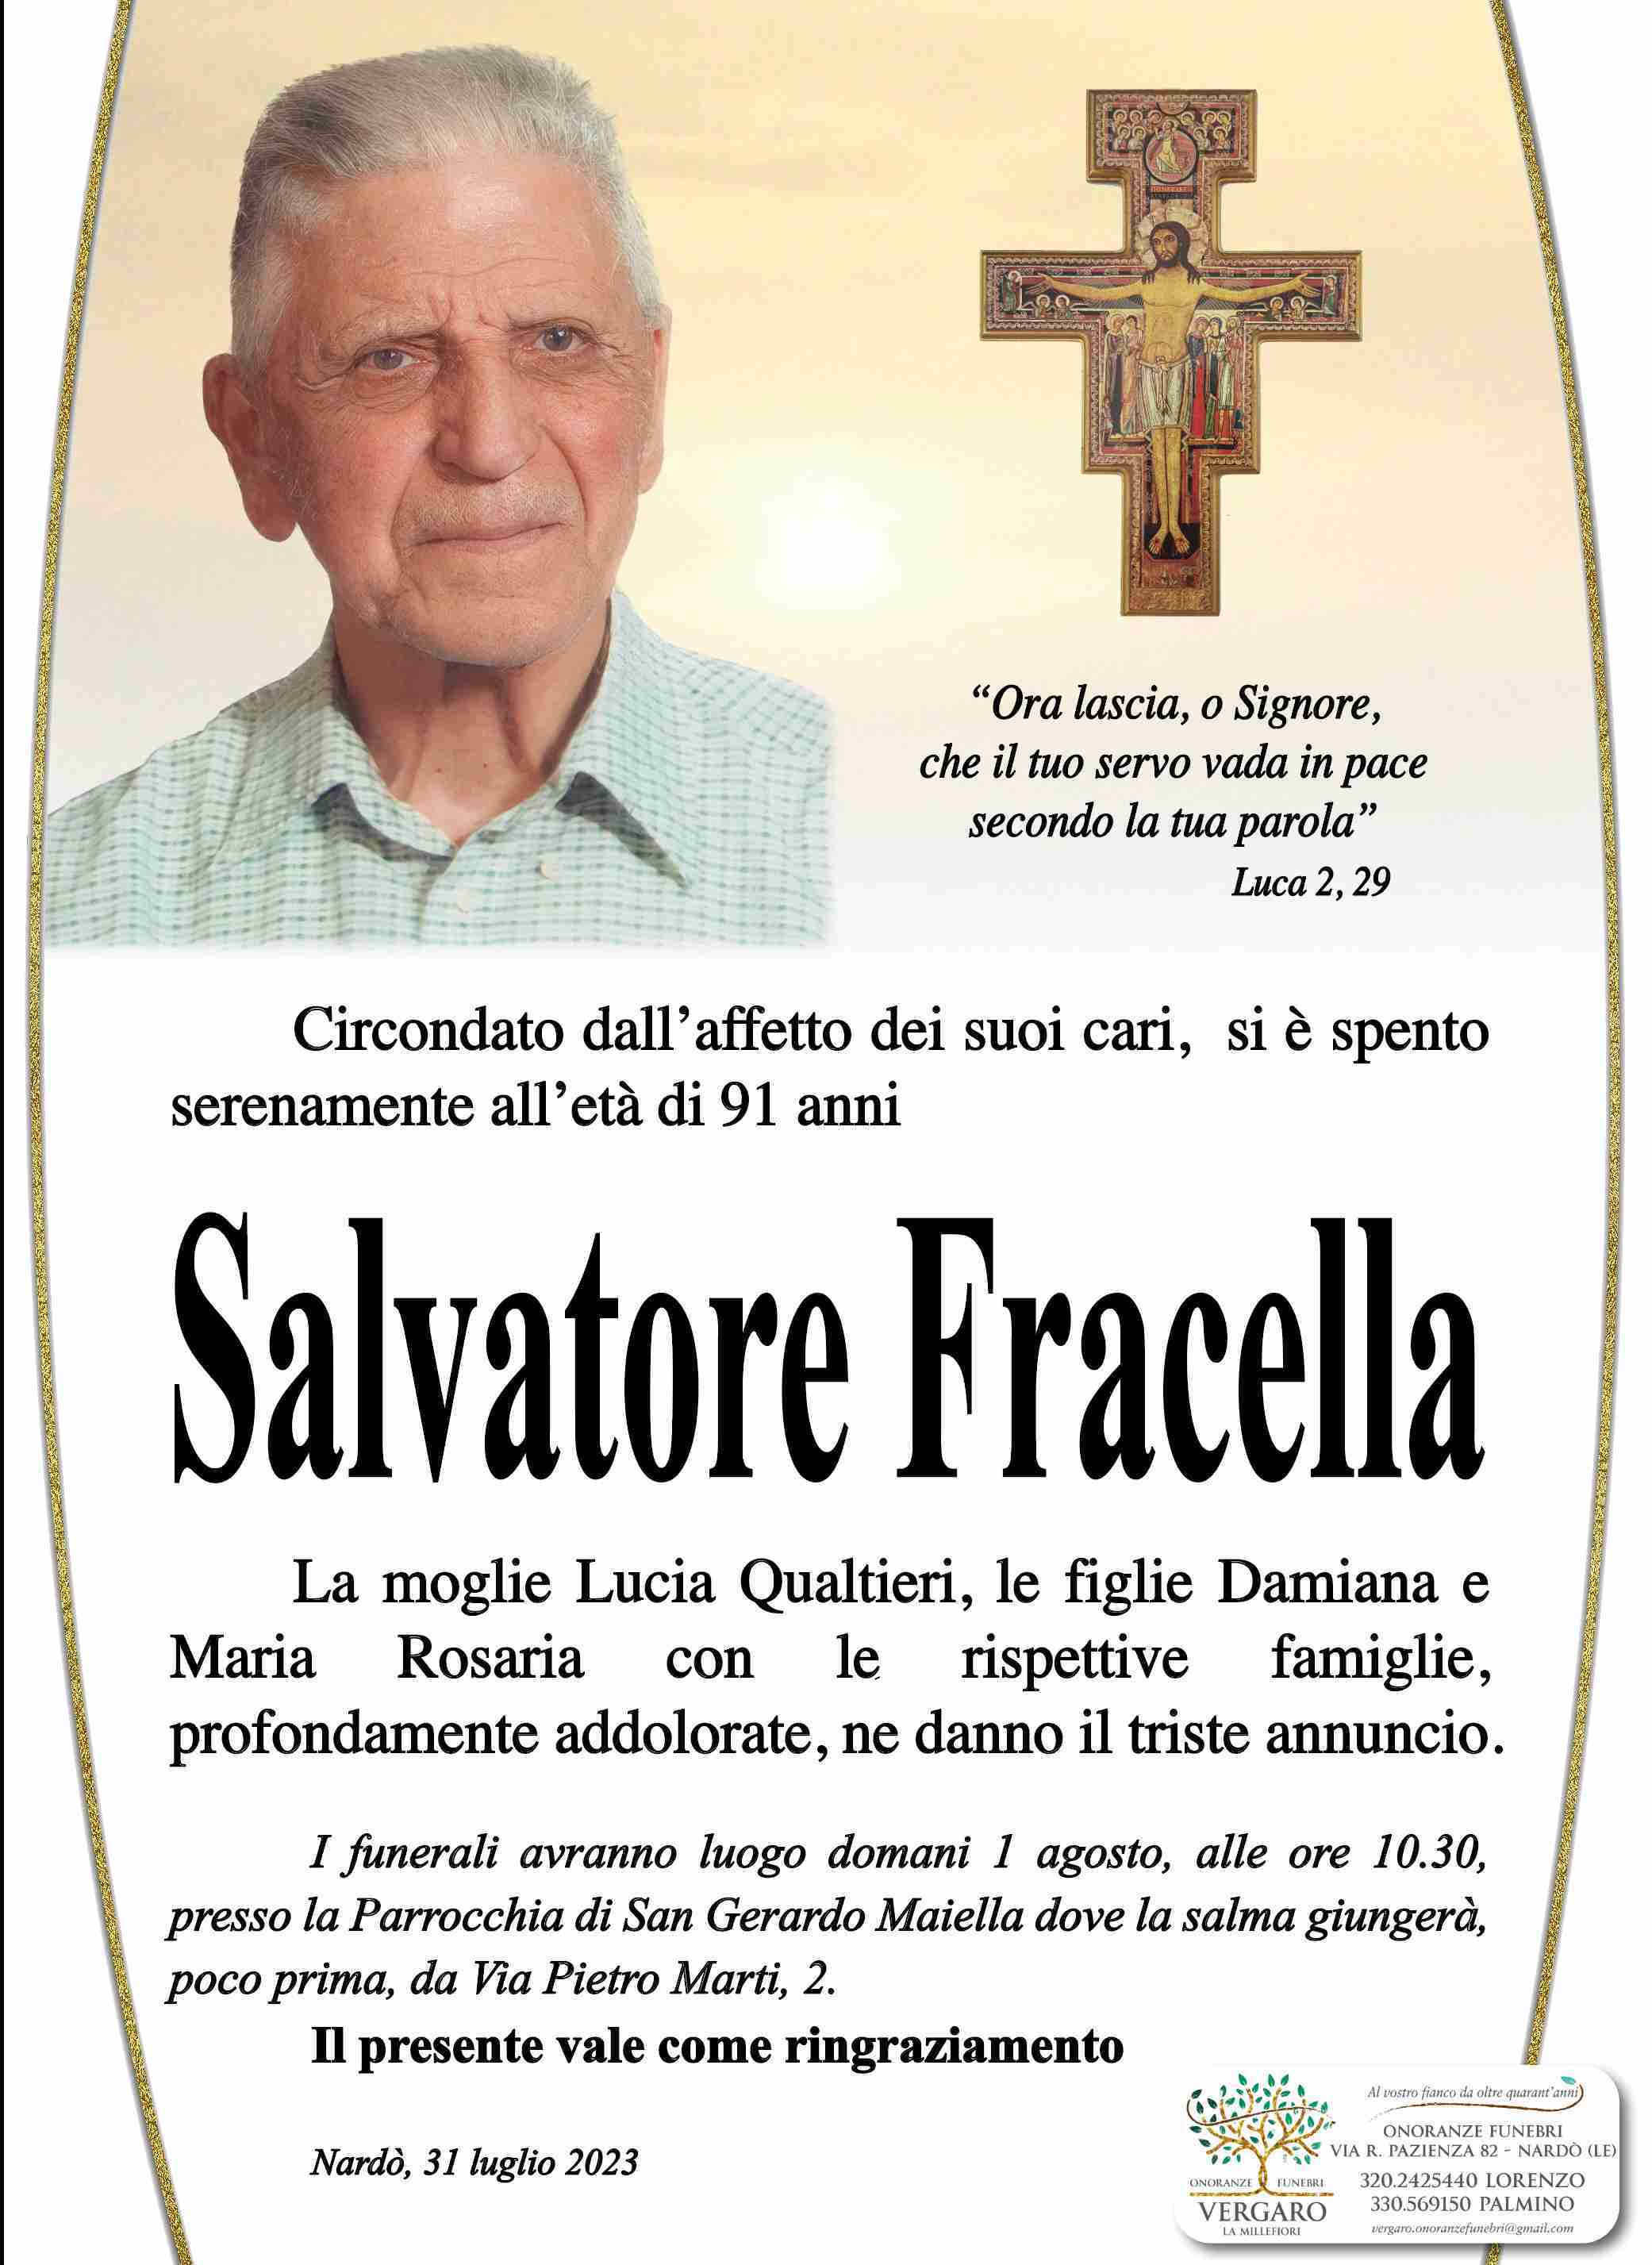 Salvatore Fracella